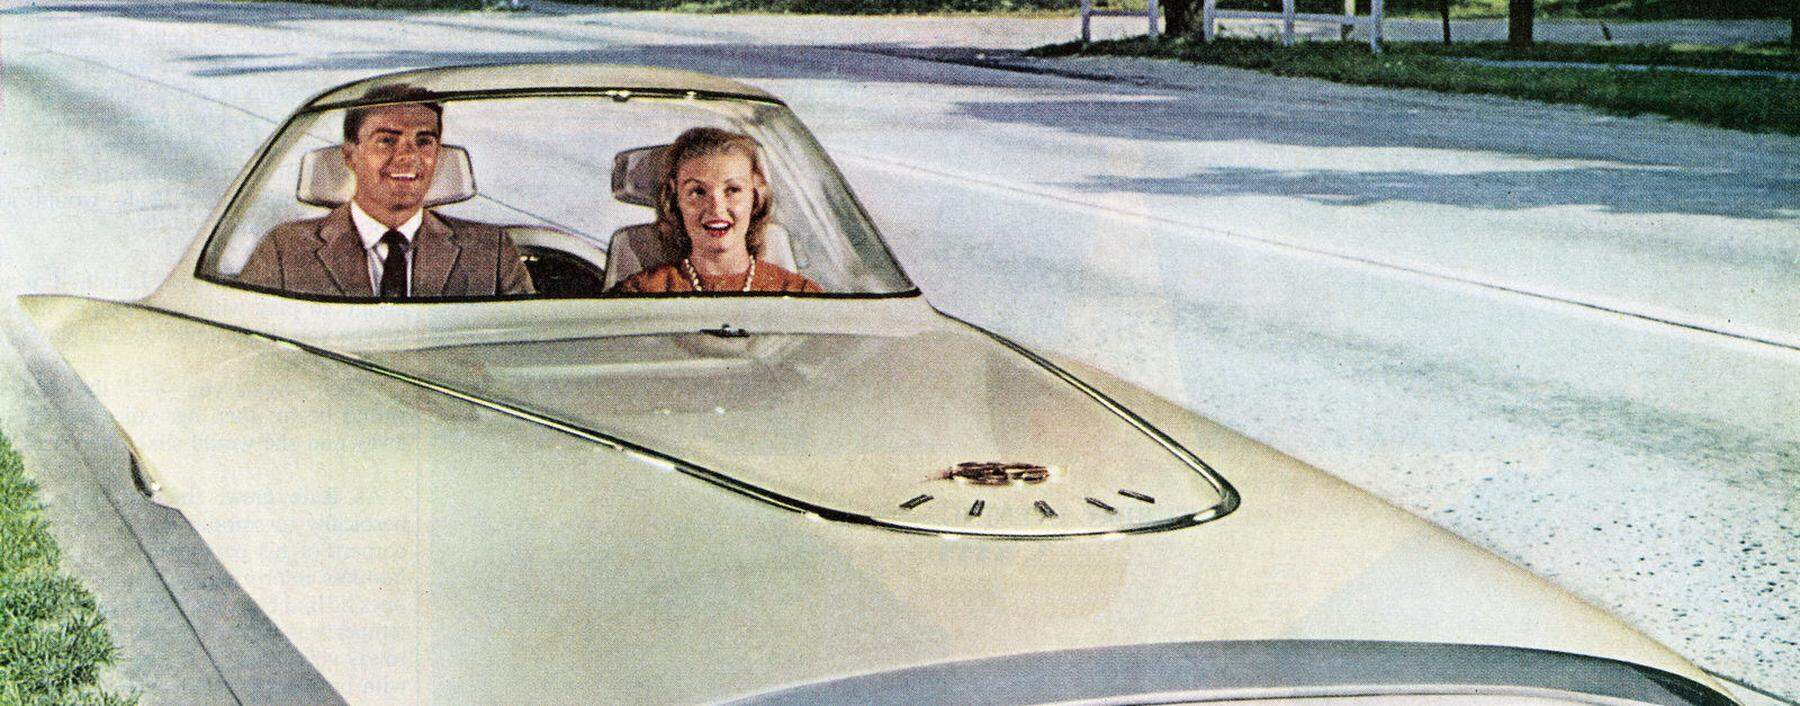 Das war in den 1960ern die Vision von selbstfahrenden Autos. Heute forscht man an unbedachten Folgen der Automatisierung. 